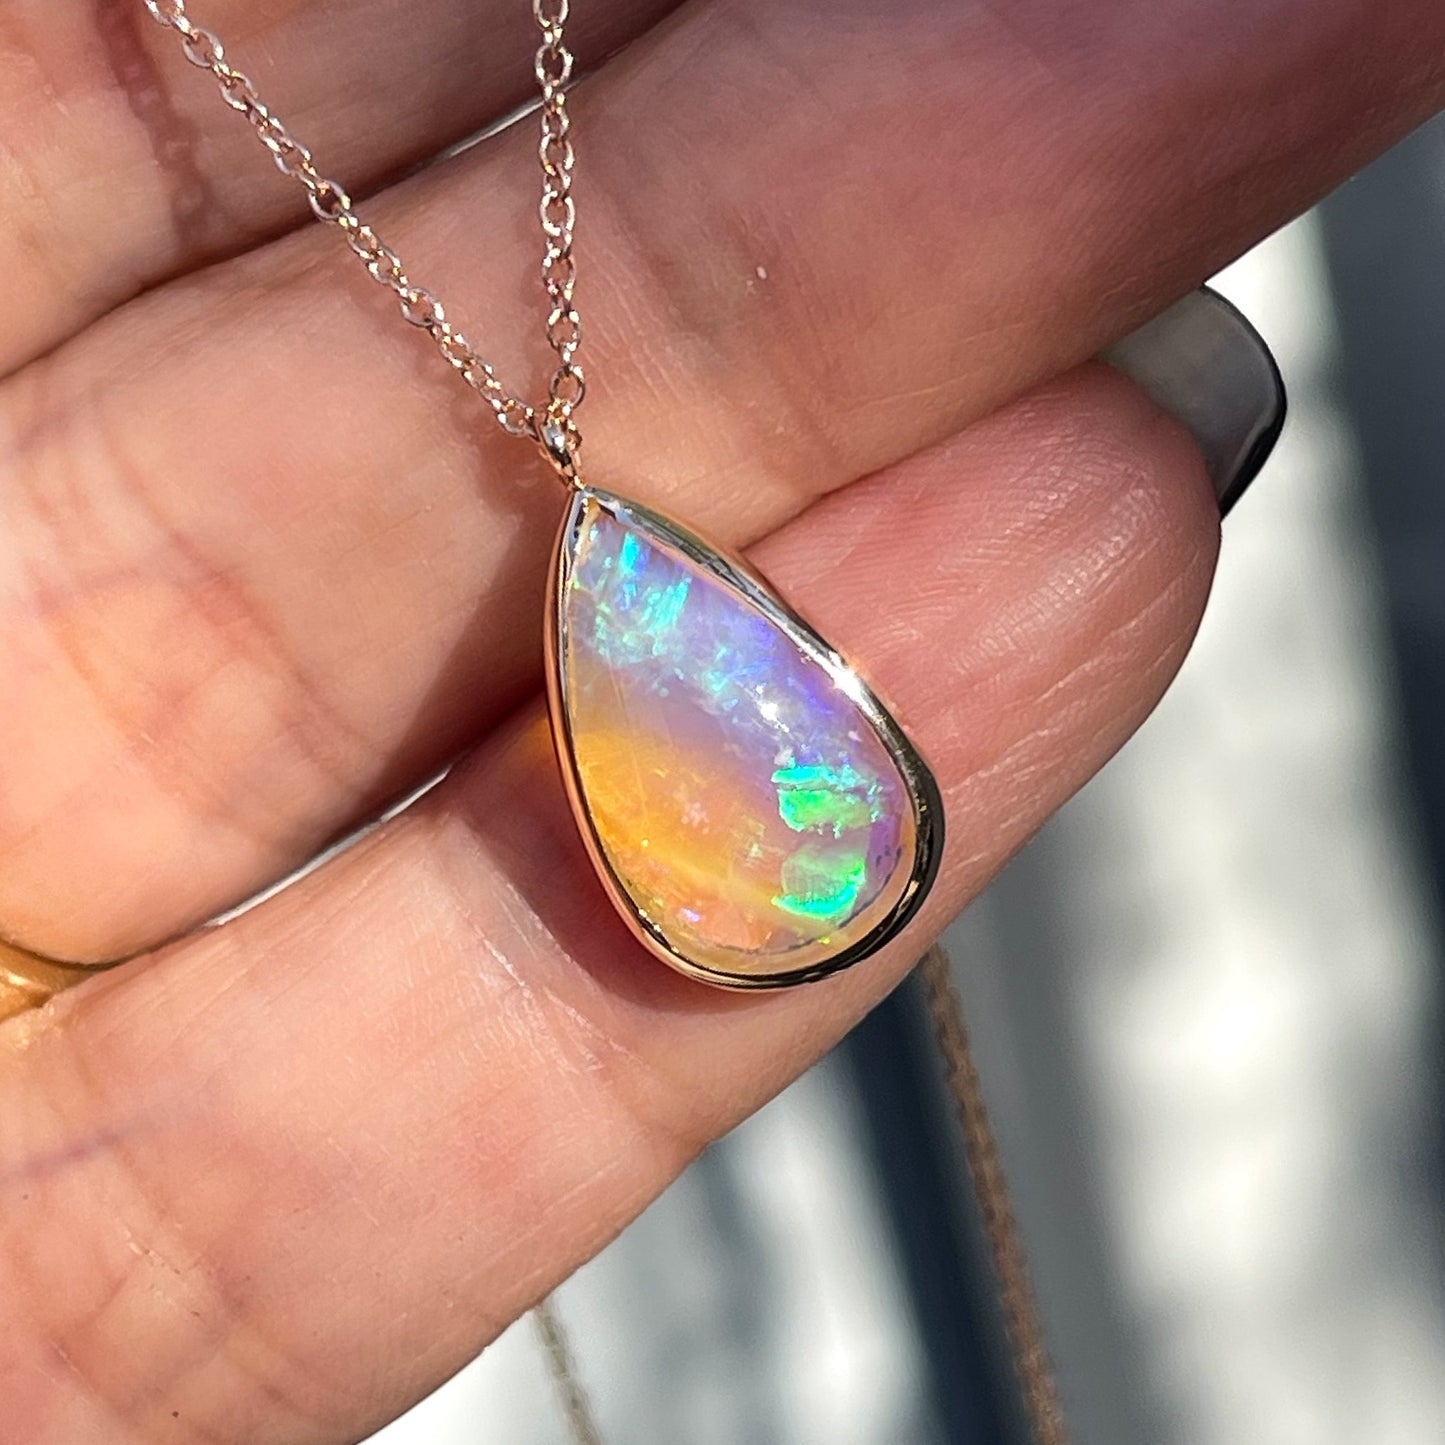 An Australian Opal Necklace by NIXIN Jewelry. An opal pendant set in 14k rose gold.